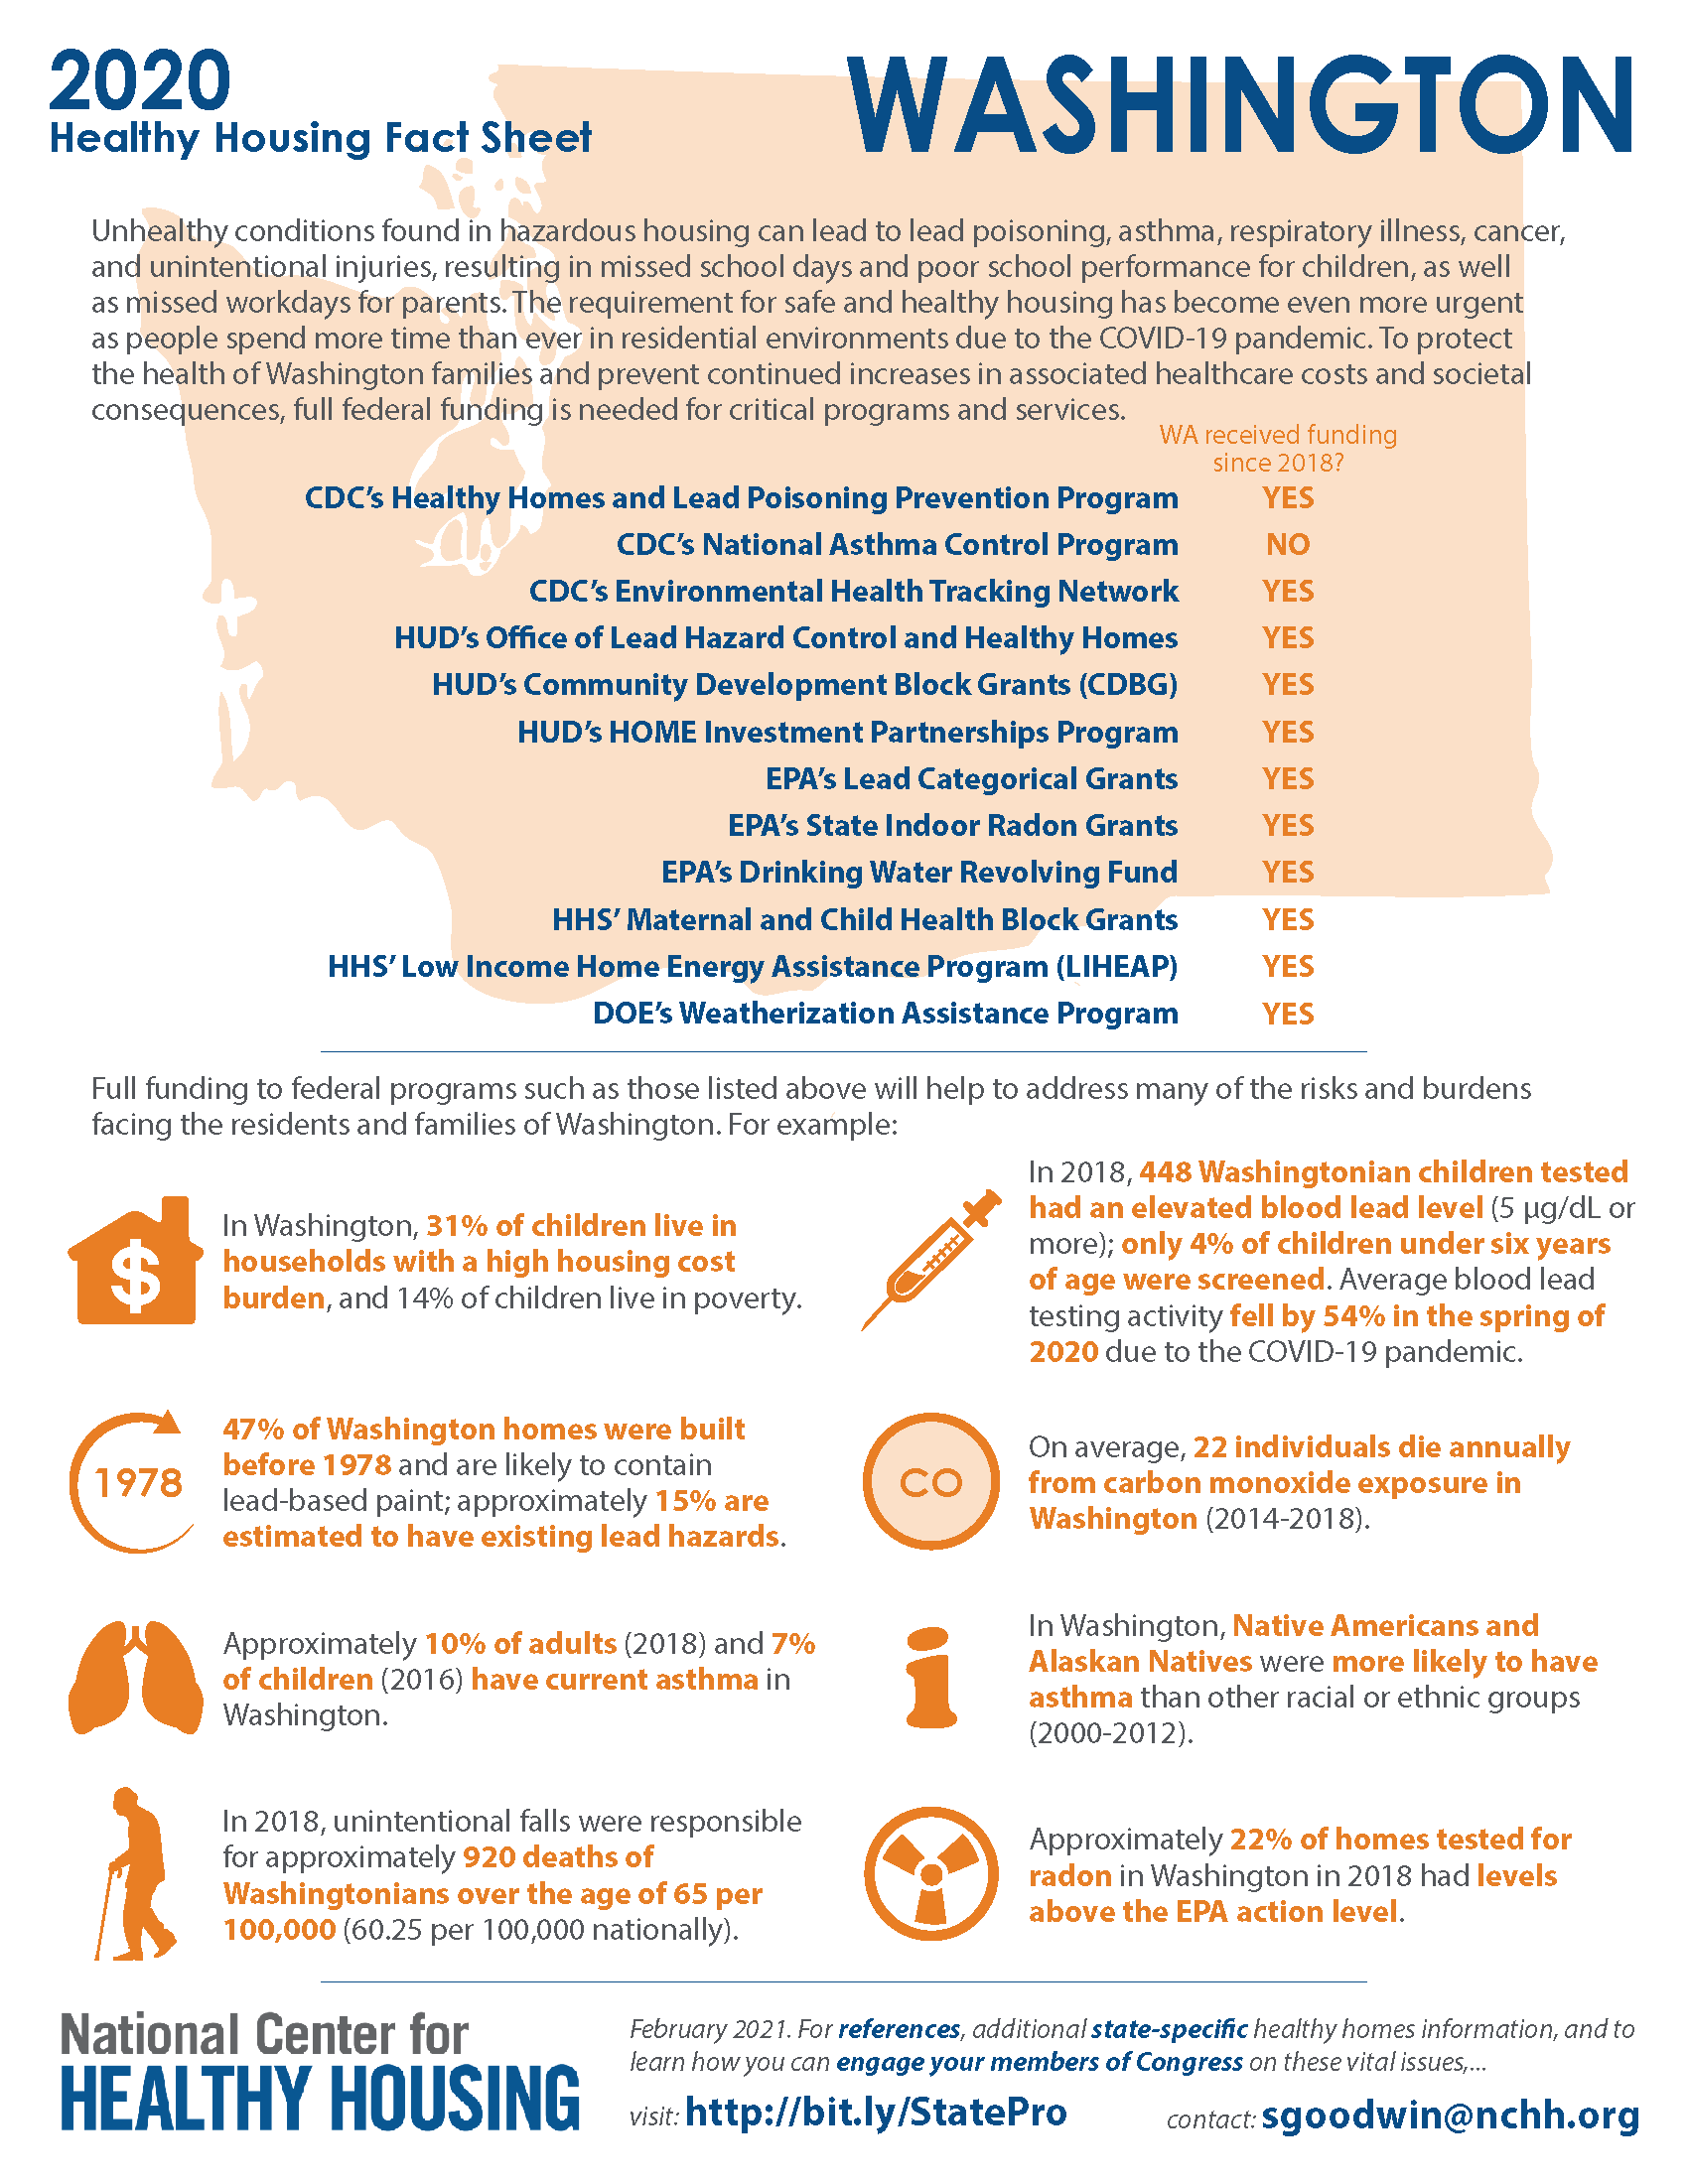 Healthy Housing Fact Sheet - Washington 2020